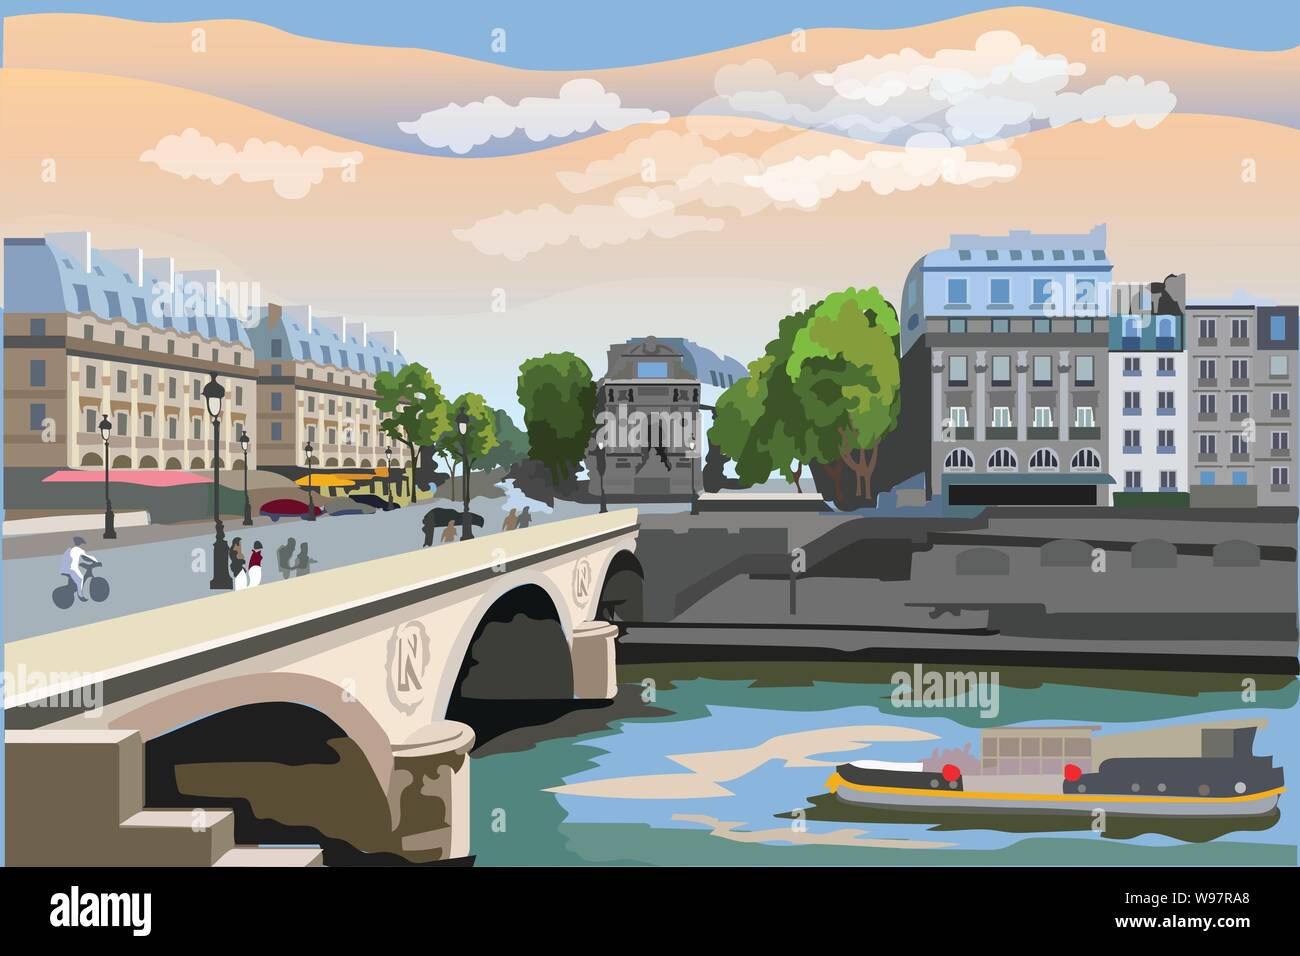 Bunte vektor Illustration von Pont Saint Michel Brücke, Wahrzeichen von Paris, Frankreich. Stadtbild mit Saint Michel Brücke und Pariser Straße. Bunte vec Stock Vektor